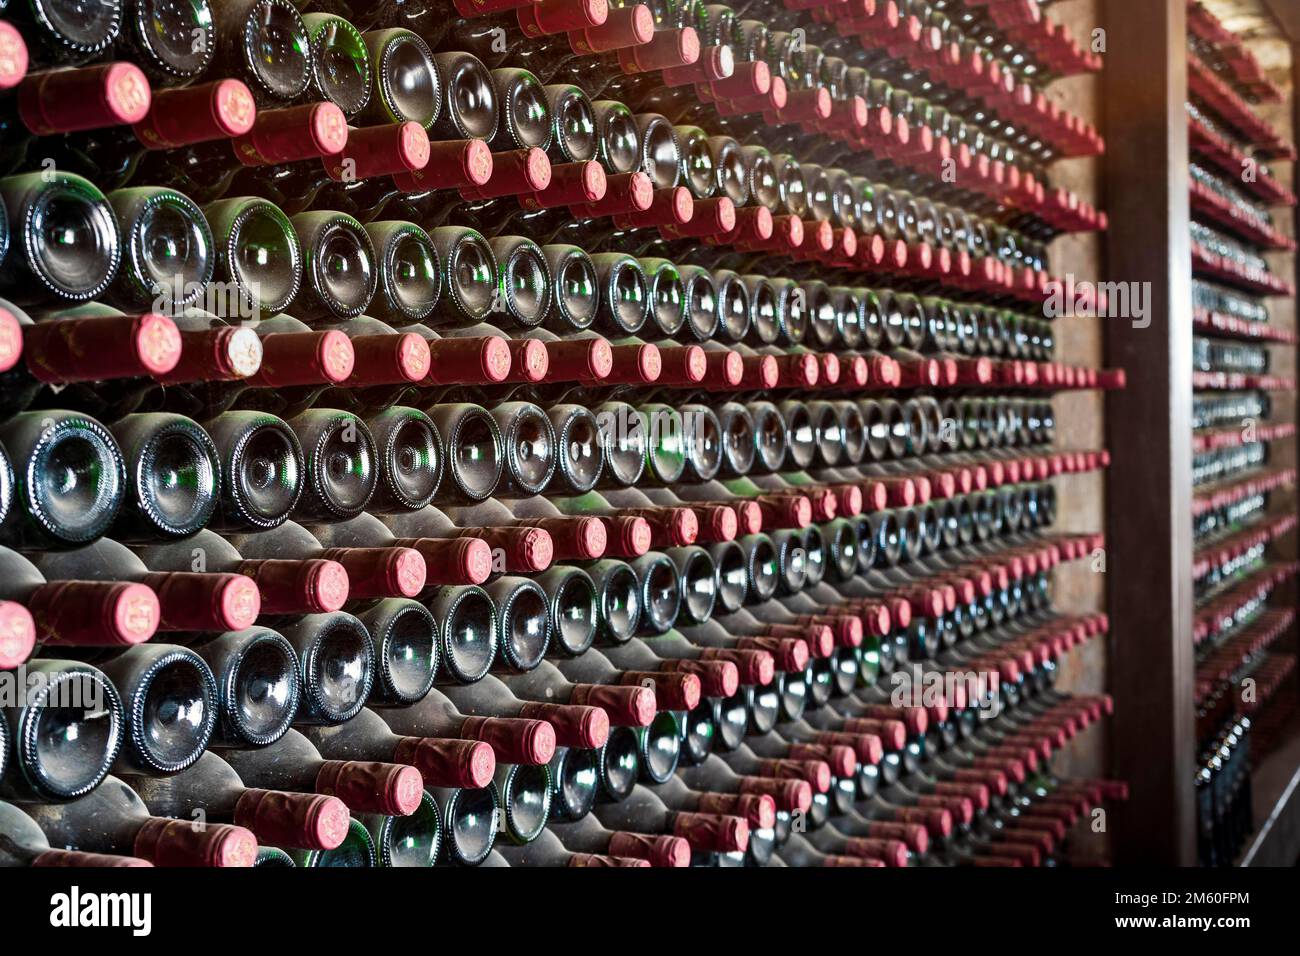 Beaucoup de bouteilles dans une rangée empilée sur une étagère de cave de vinification, Lanzarote, Espagne Banque D'Images